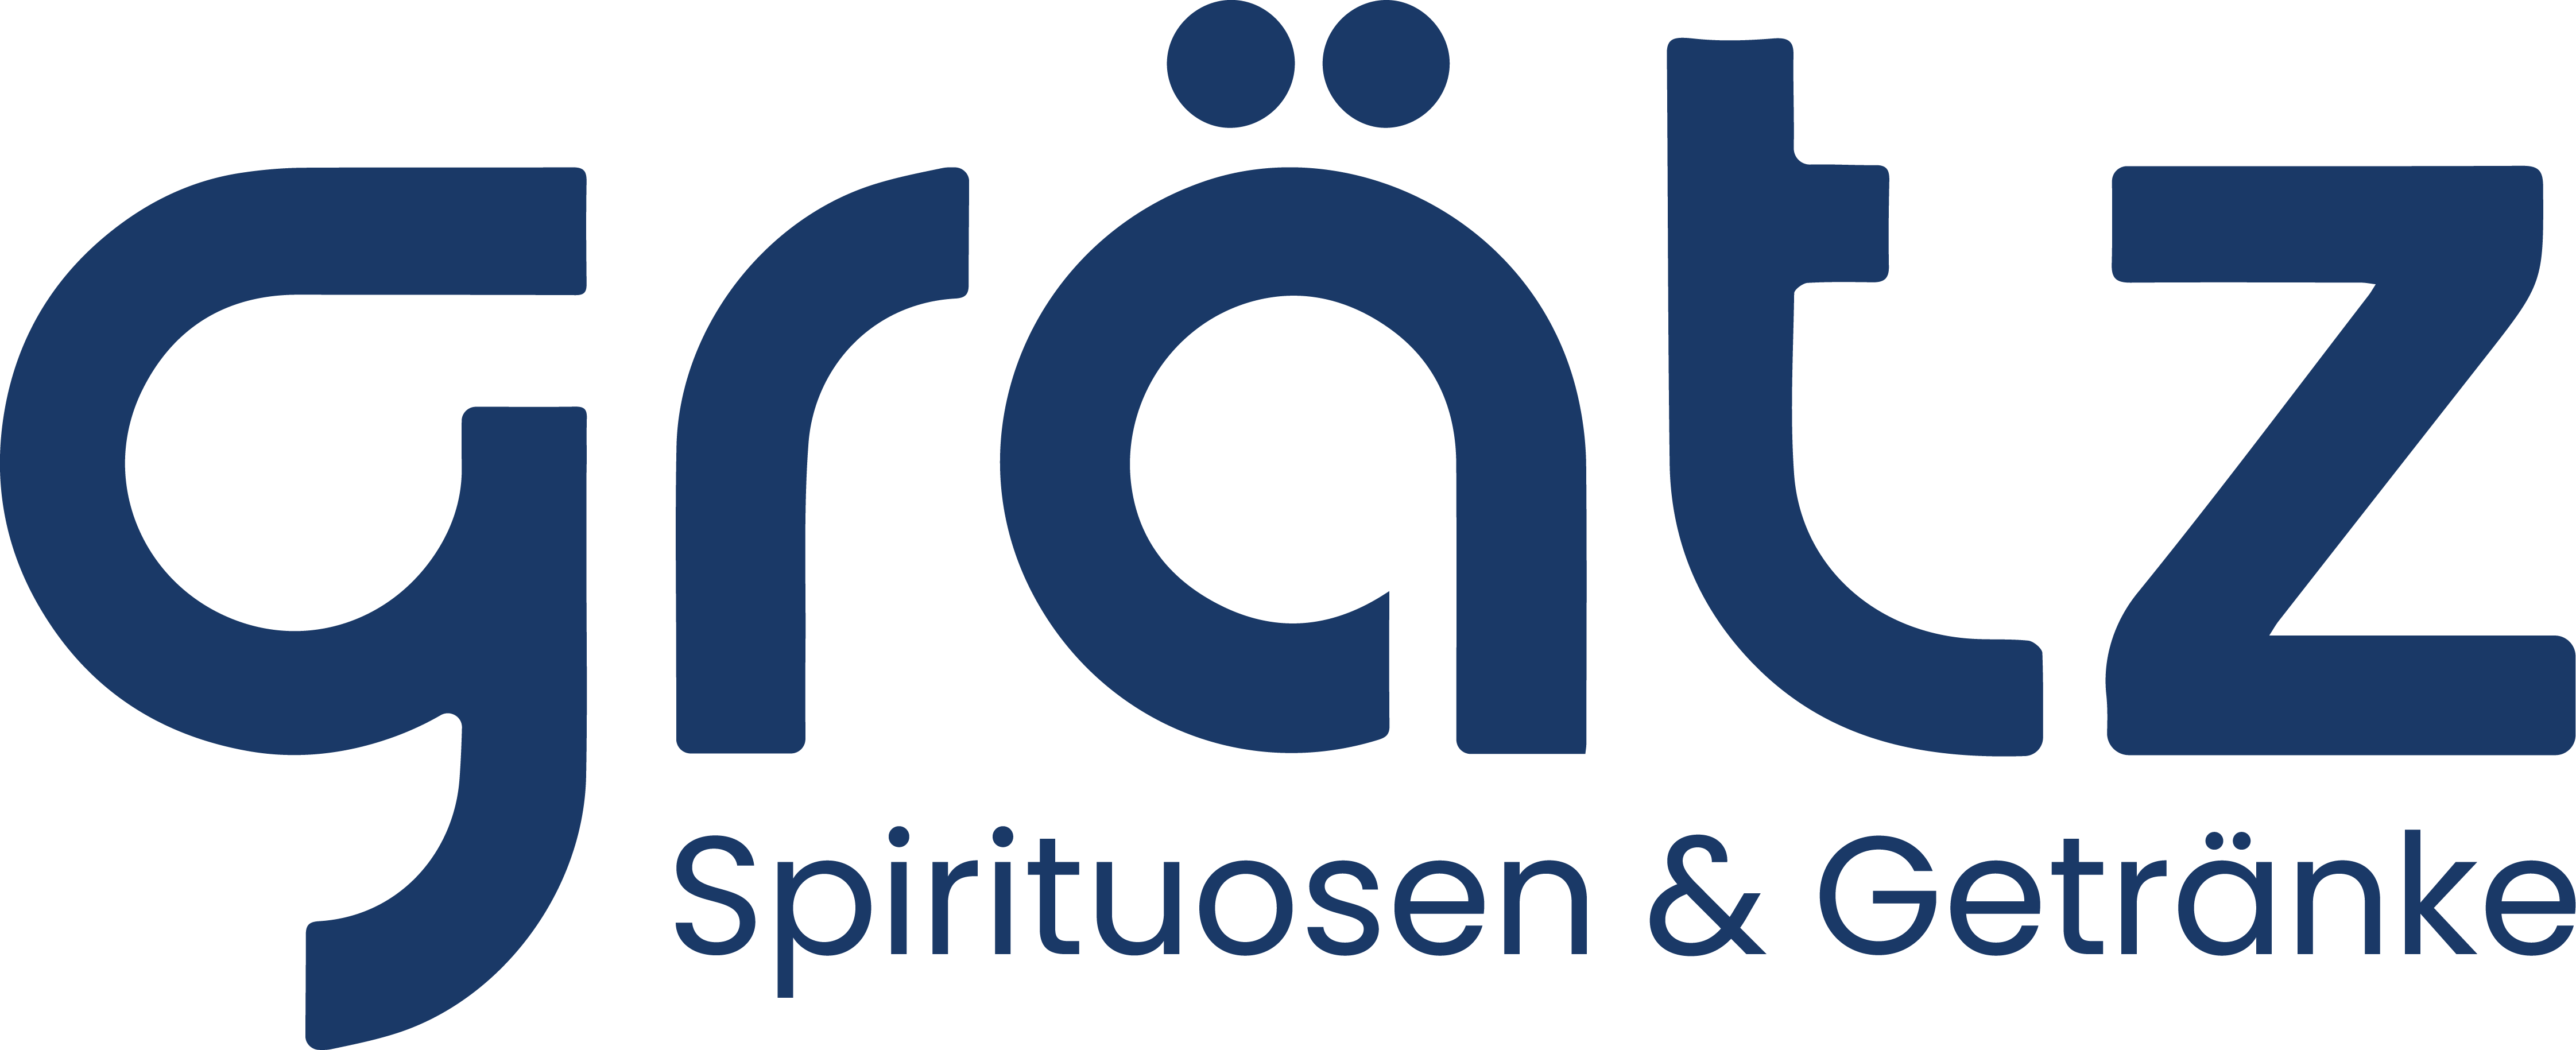 Grätz Spirituosen & Getränke Logo